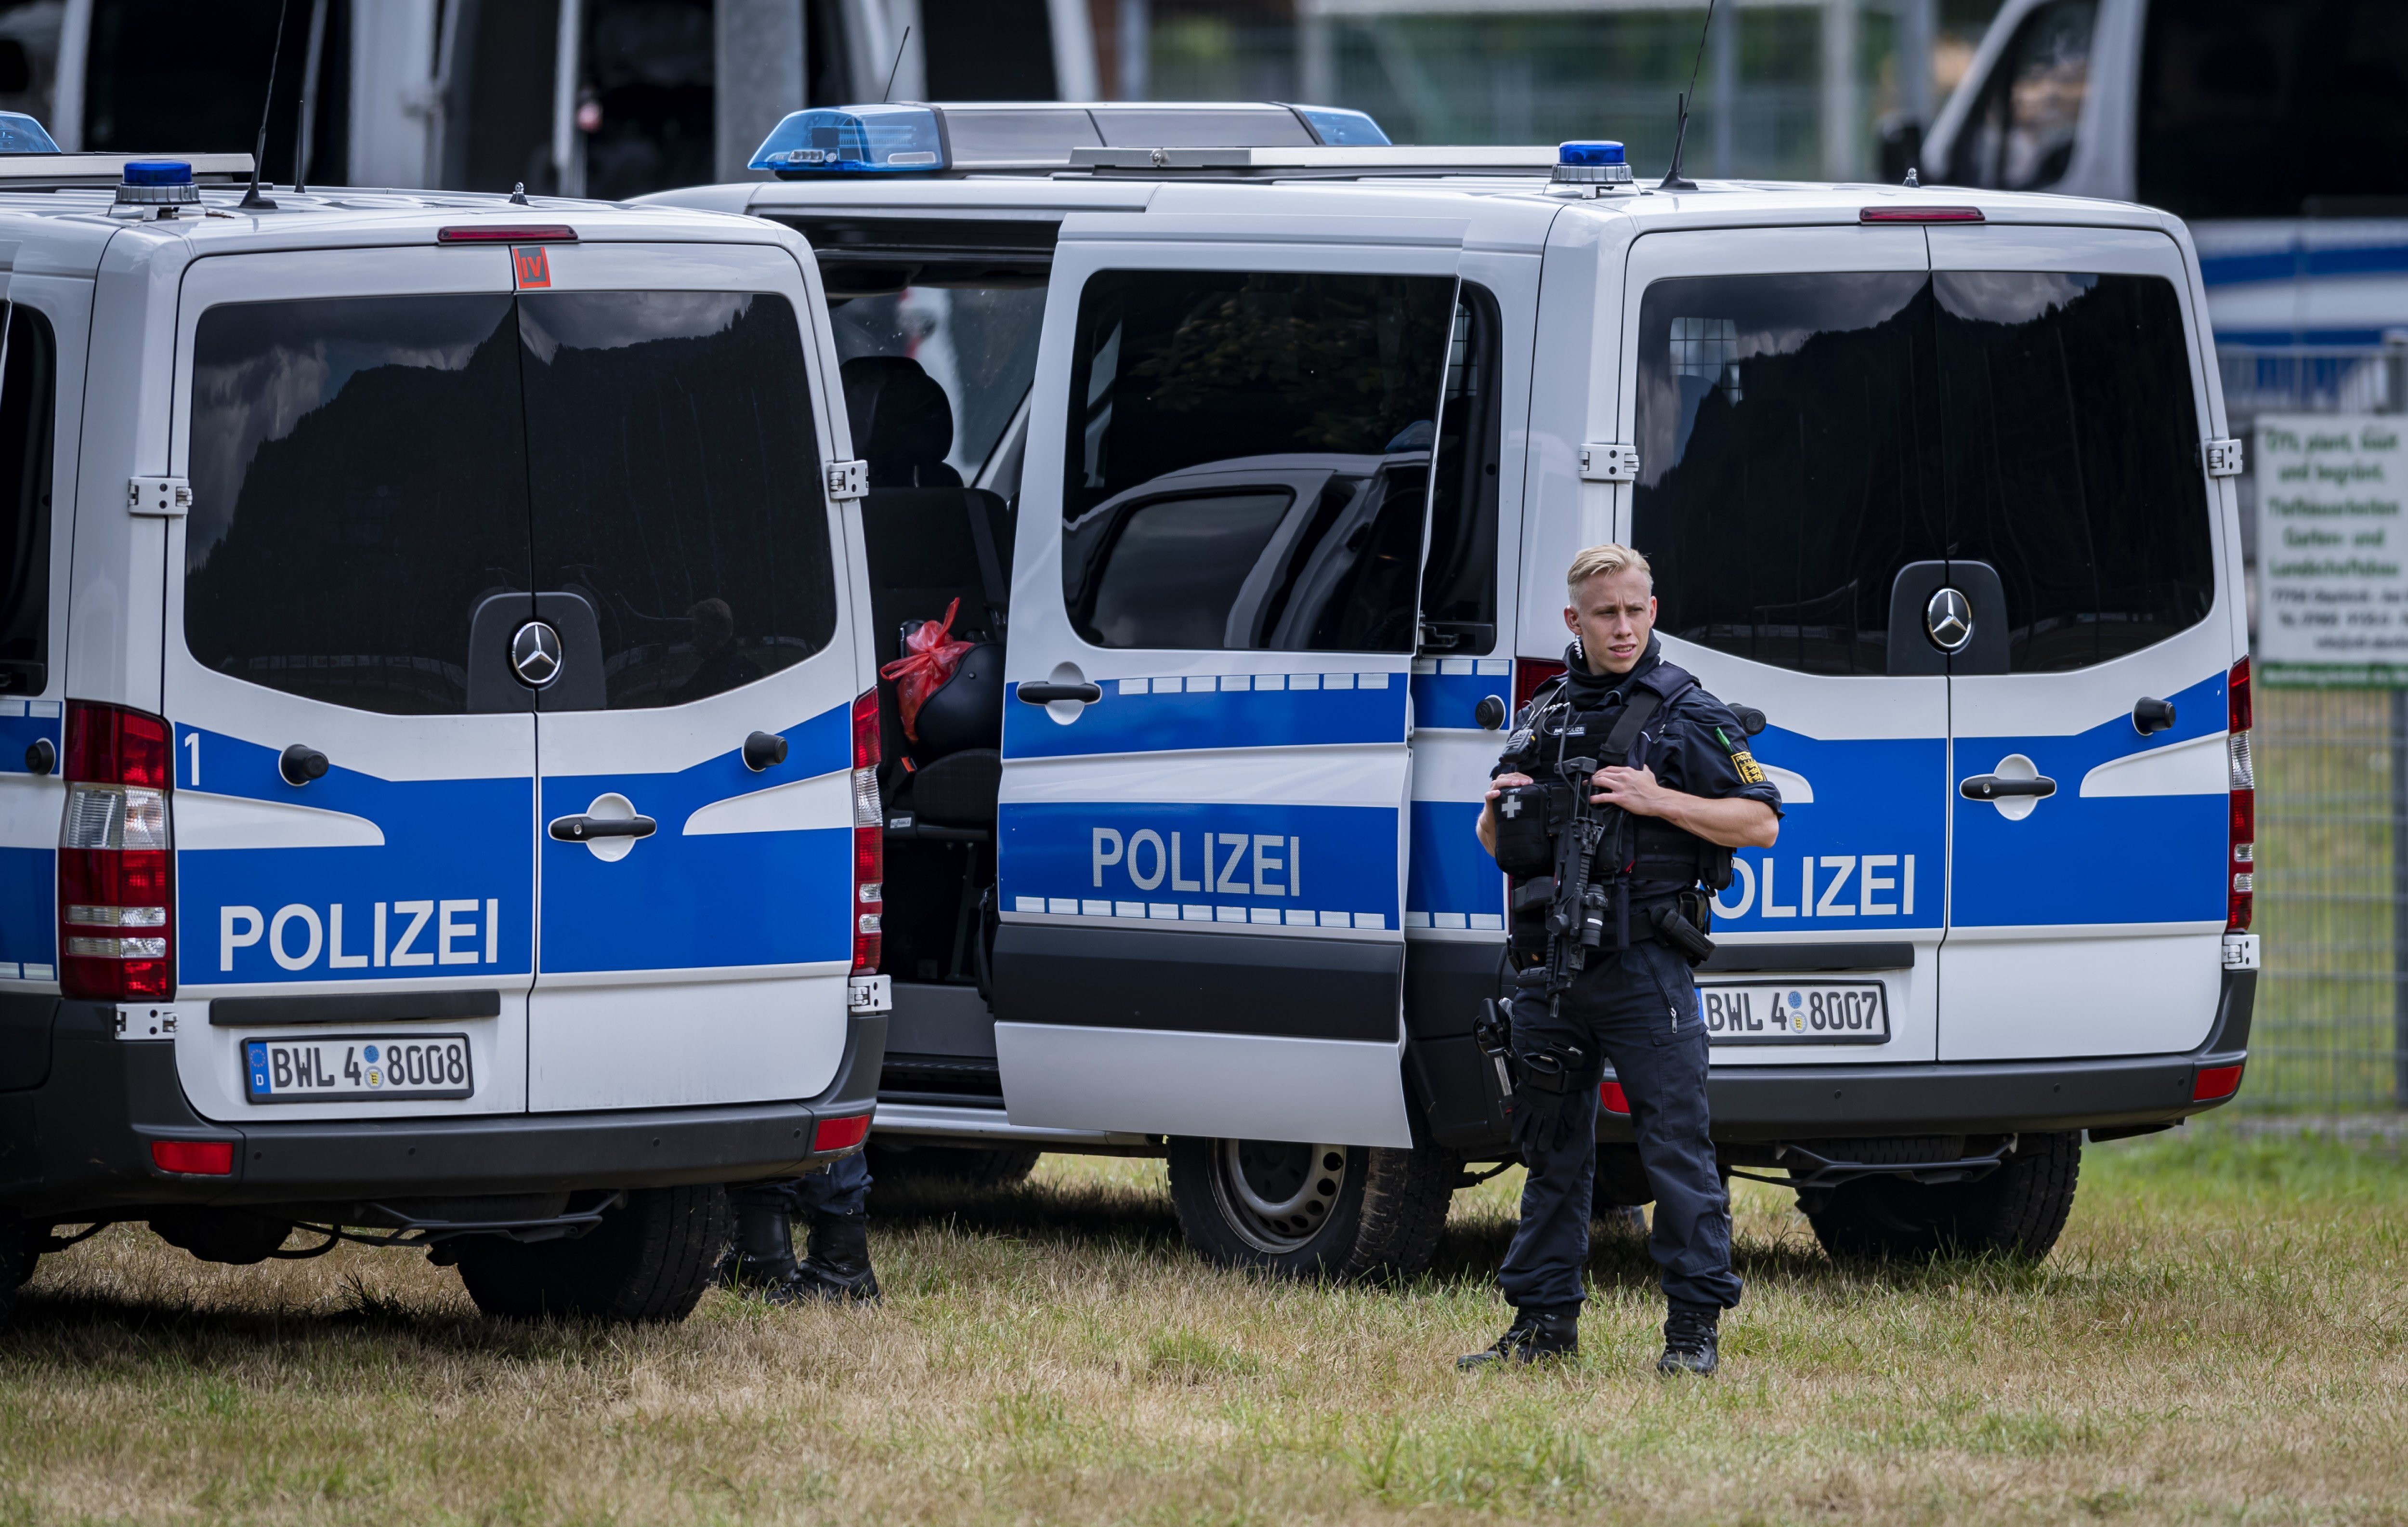 Bewaffnete Polizisten vor Polizeiwagen | Quelle: Getty Images